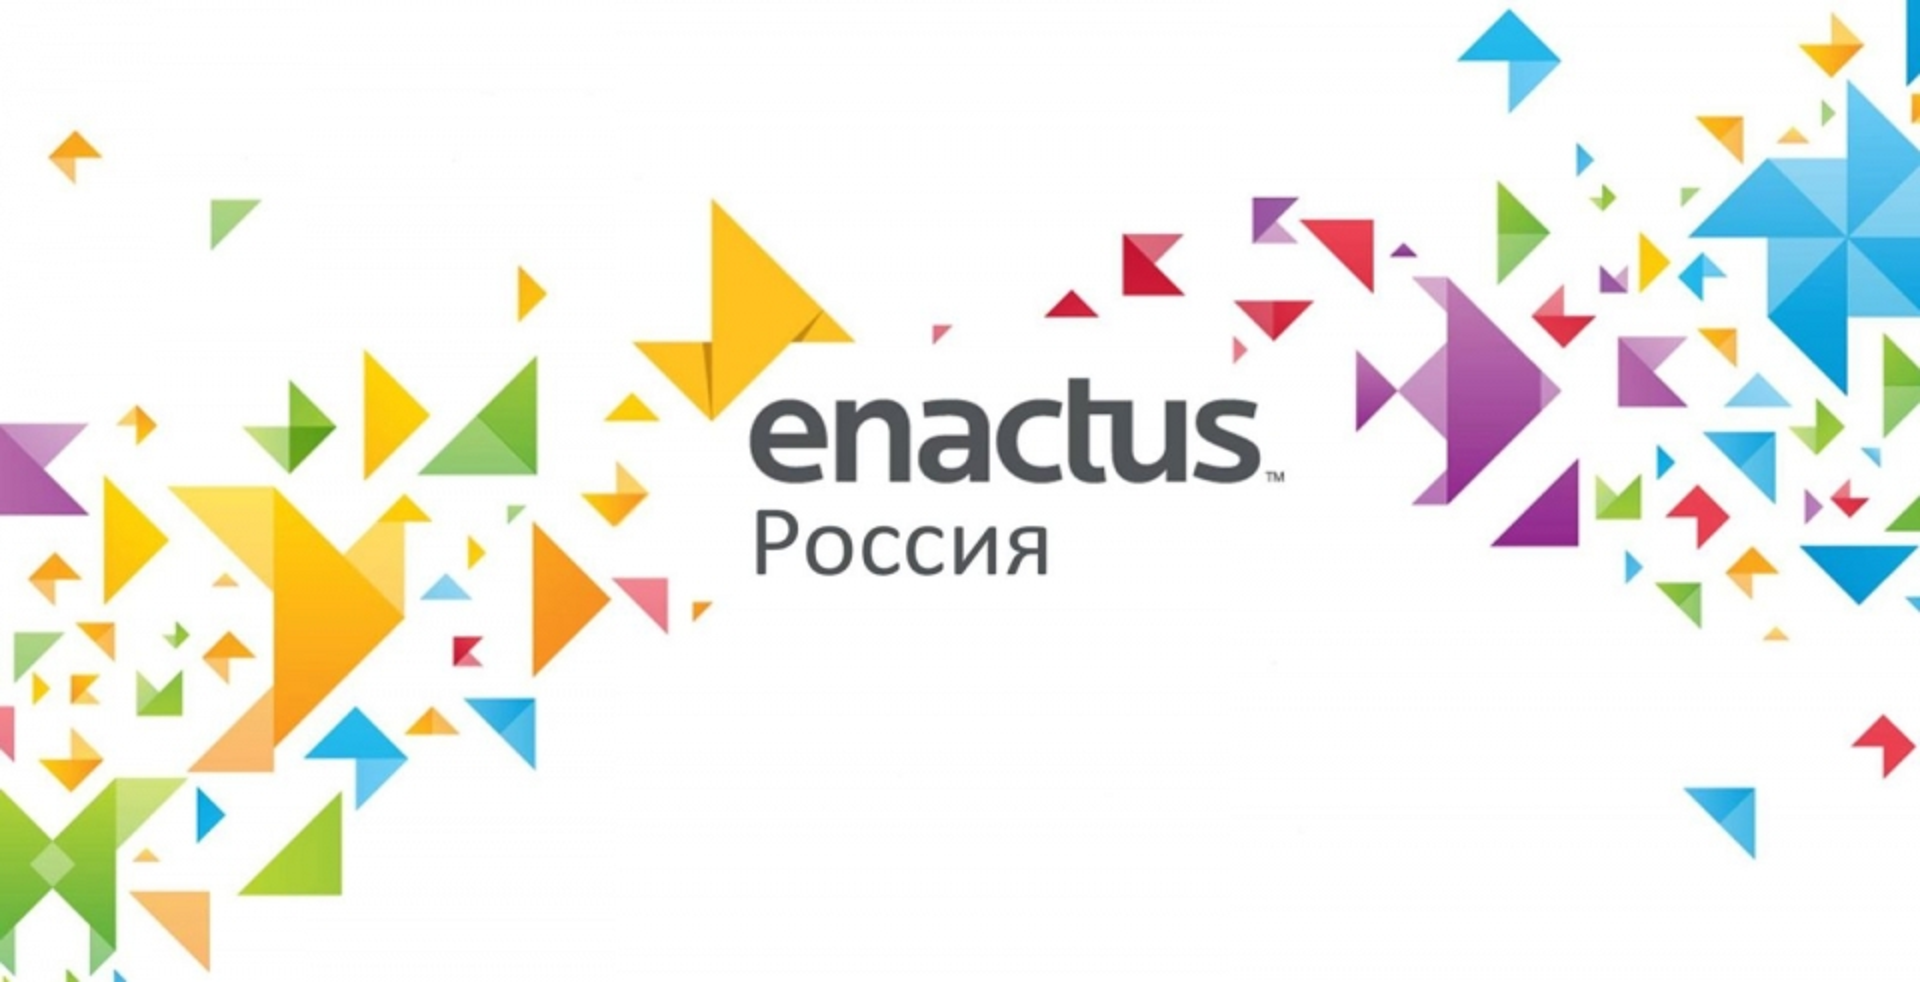 ВятГУ примет участие в заключительных состязаниях Всероссийского конкурса Enactus 2018